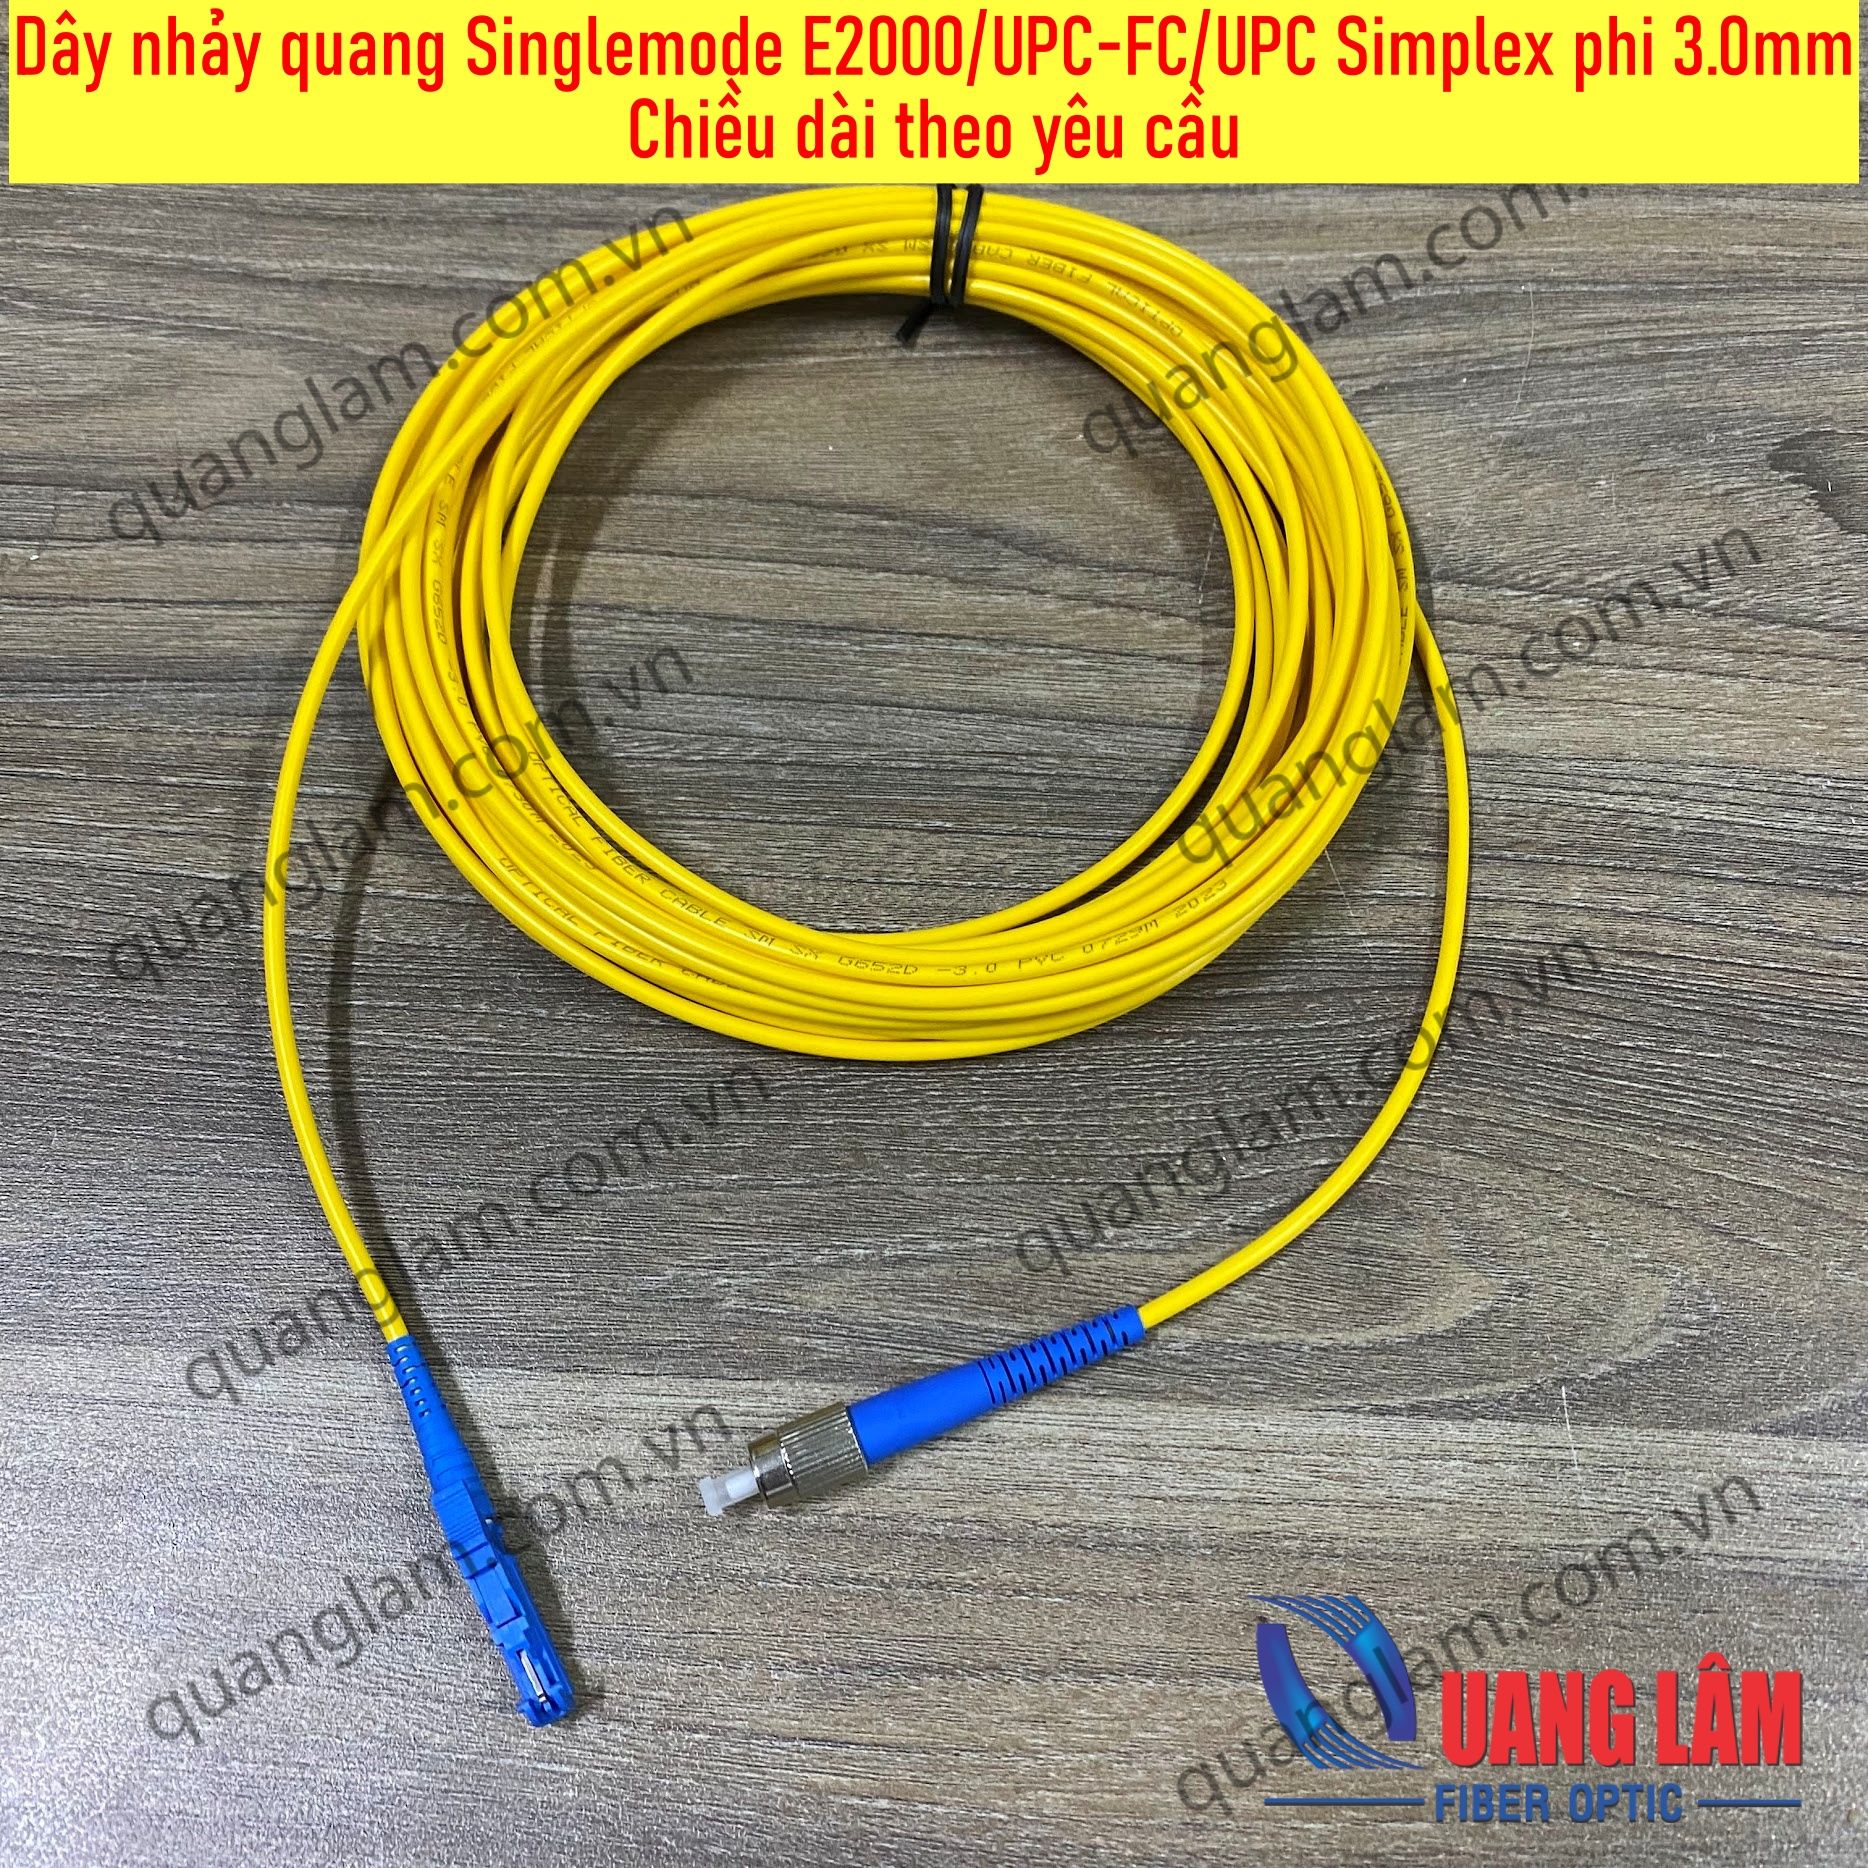 Dây nhảy quang Singlemode E2000/UPC-FC/UPC phi 3.0mm, Simplex-Chiều dài theo yêu cầu